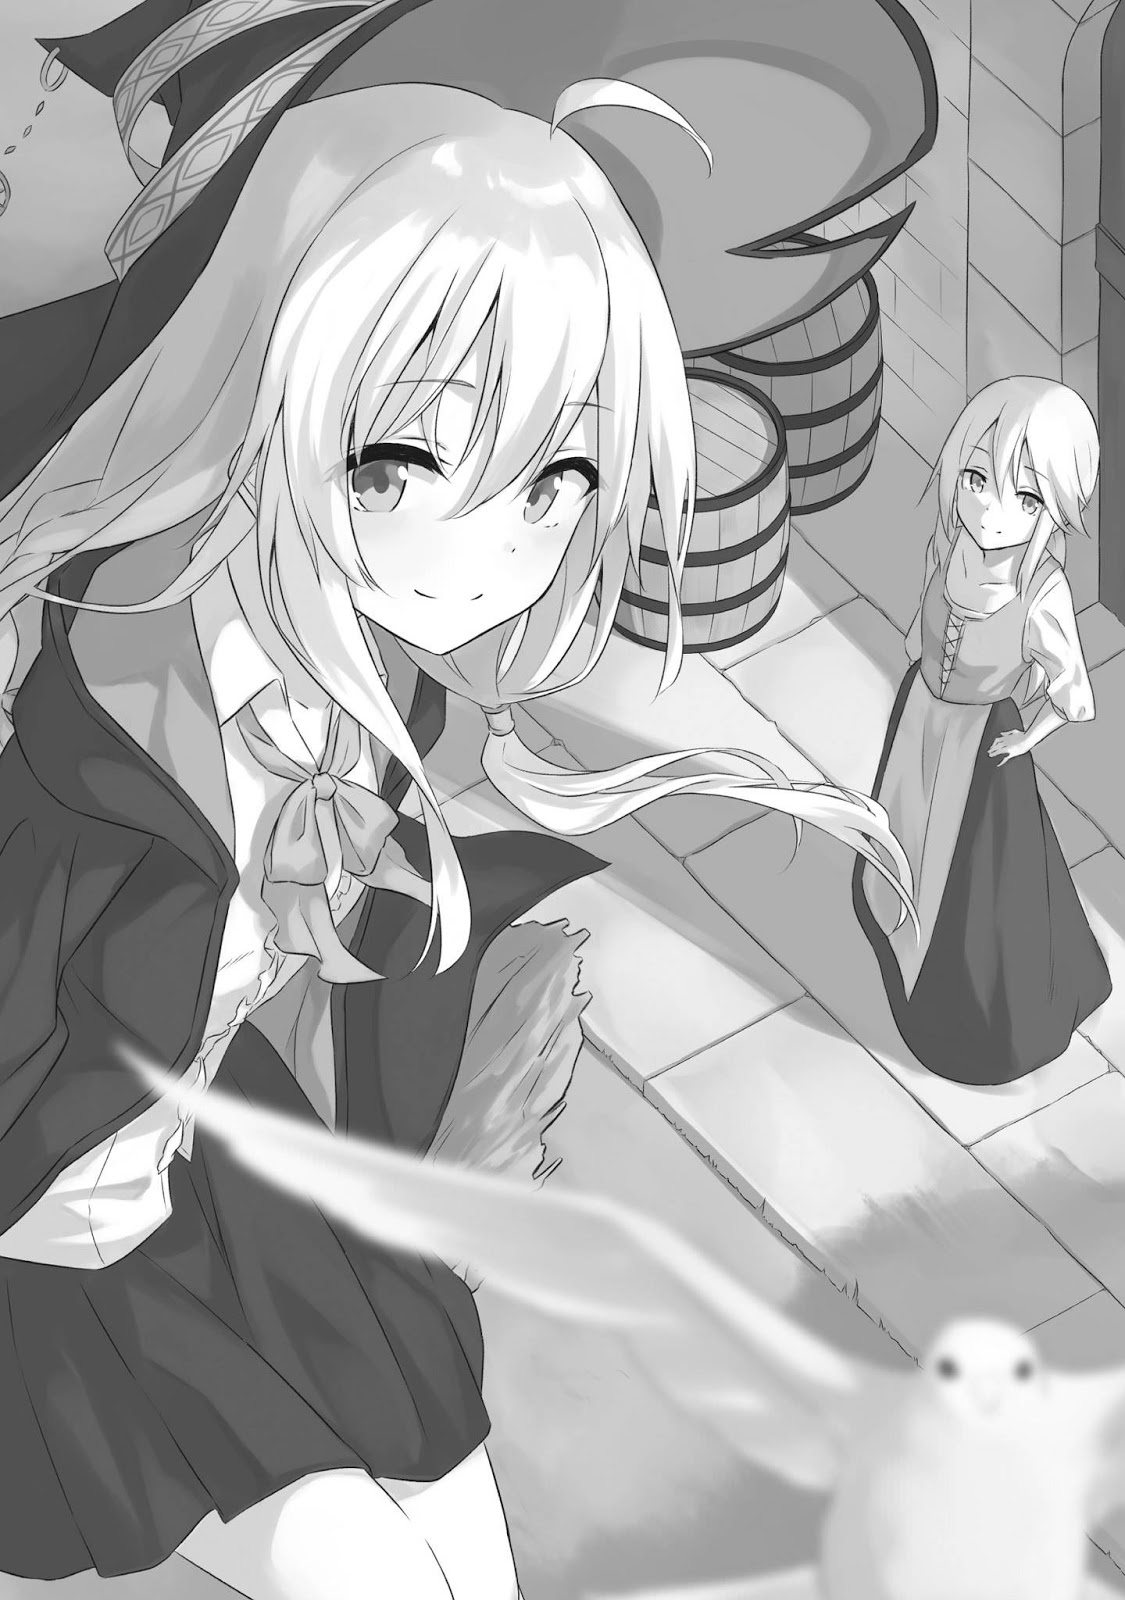 [Ruidrive] - Ilustrasi Light Novel Wandering Witch: The Journey of Elaina - Volume 01 - 09